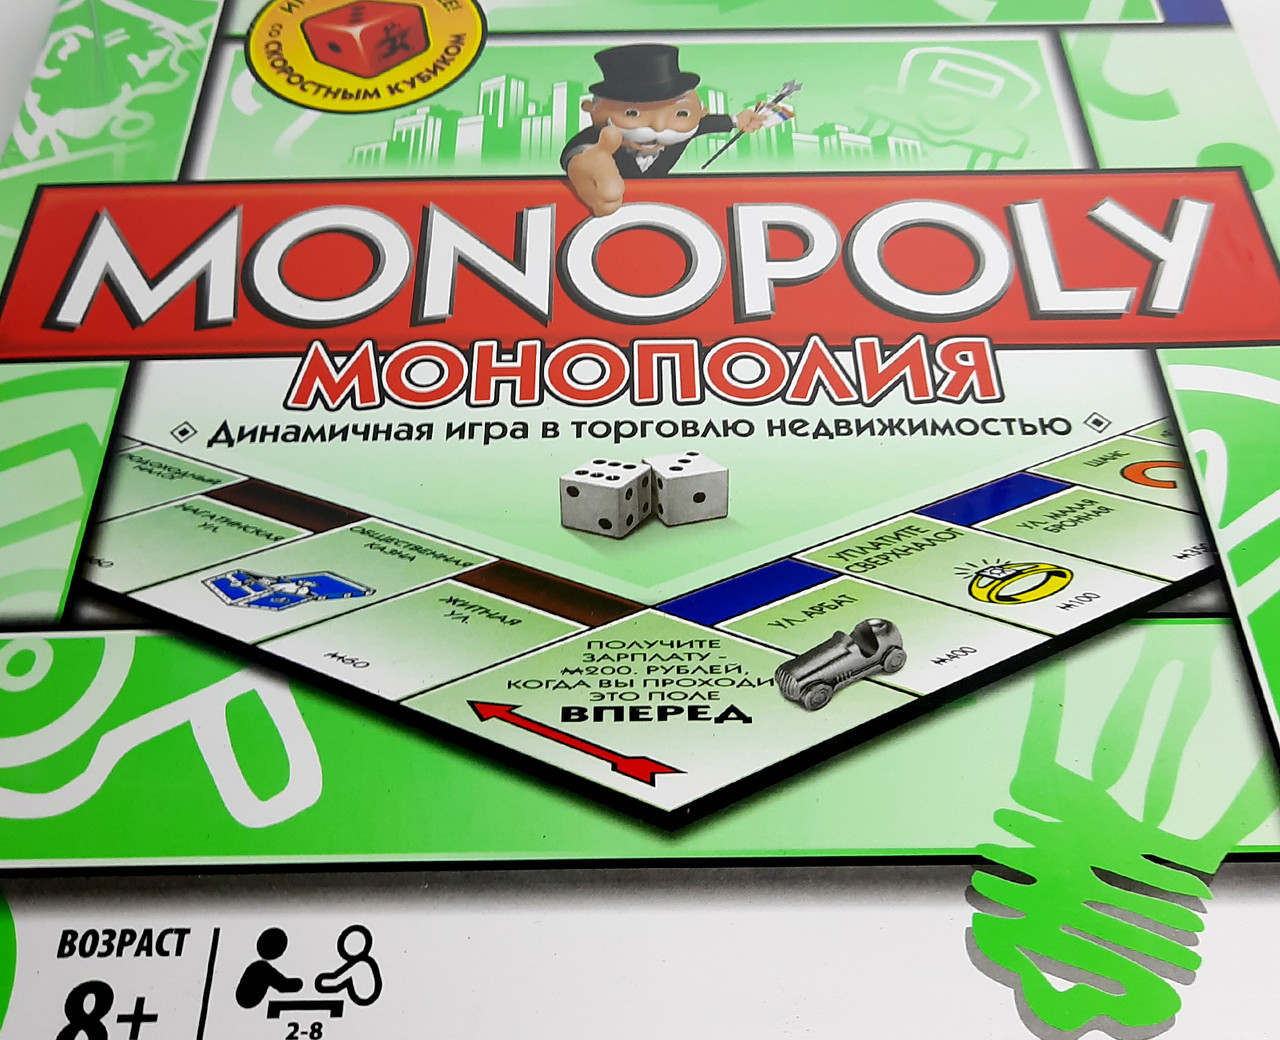 Монополія (торгівля нерухомістю) з металевими фігурками - настільна гра монополія разивающая, фото 1